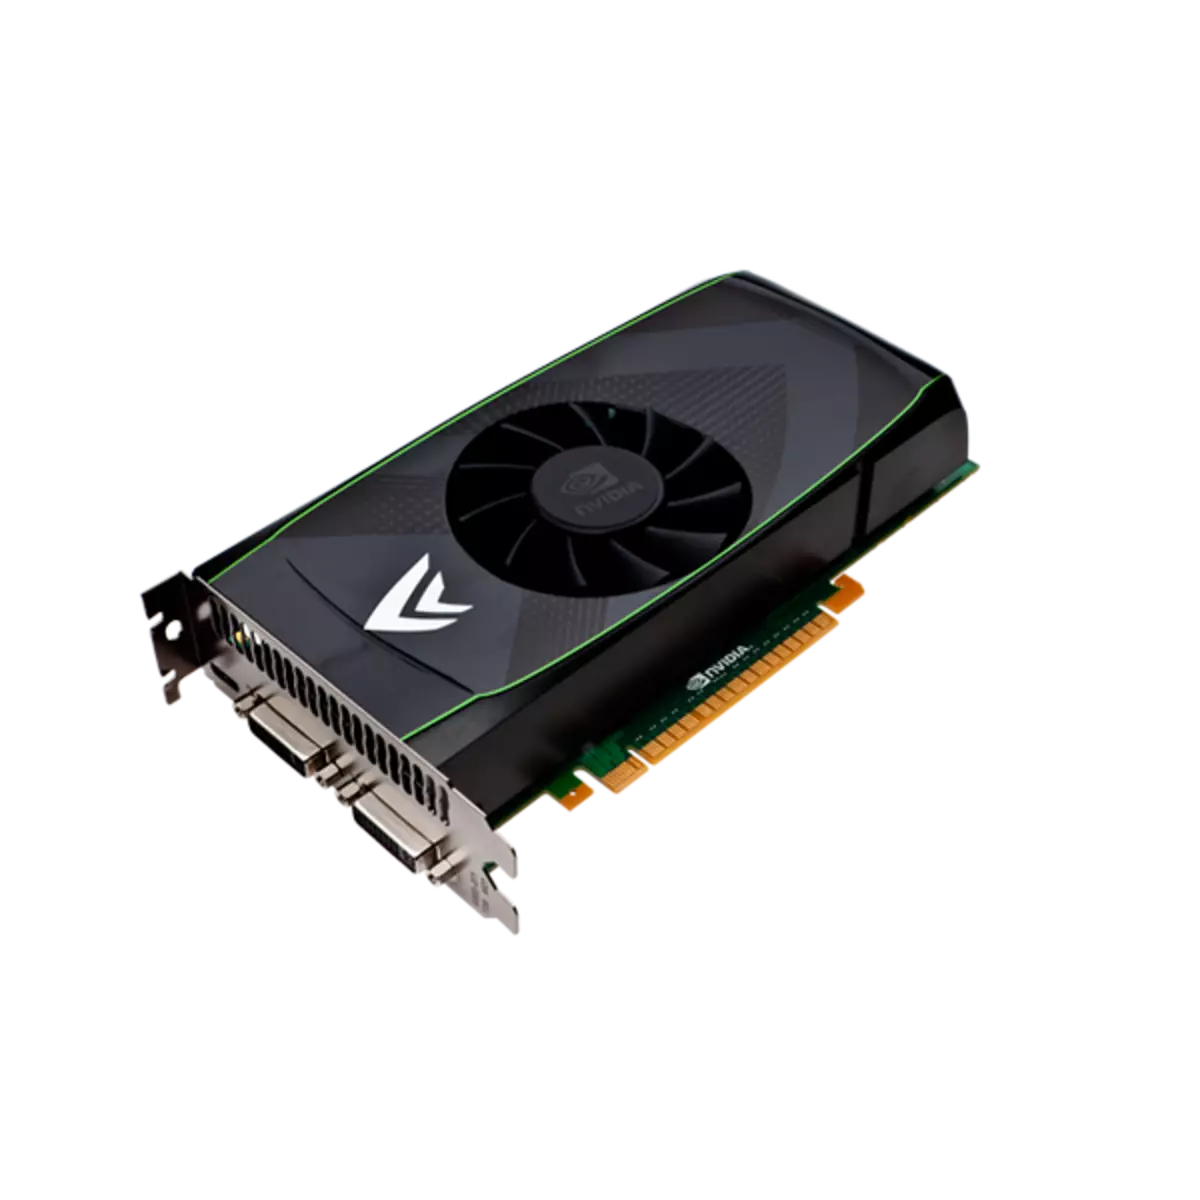 Nvidia GeForce GTS 450 के लिए ड्राइवर डाउनलोड करें